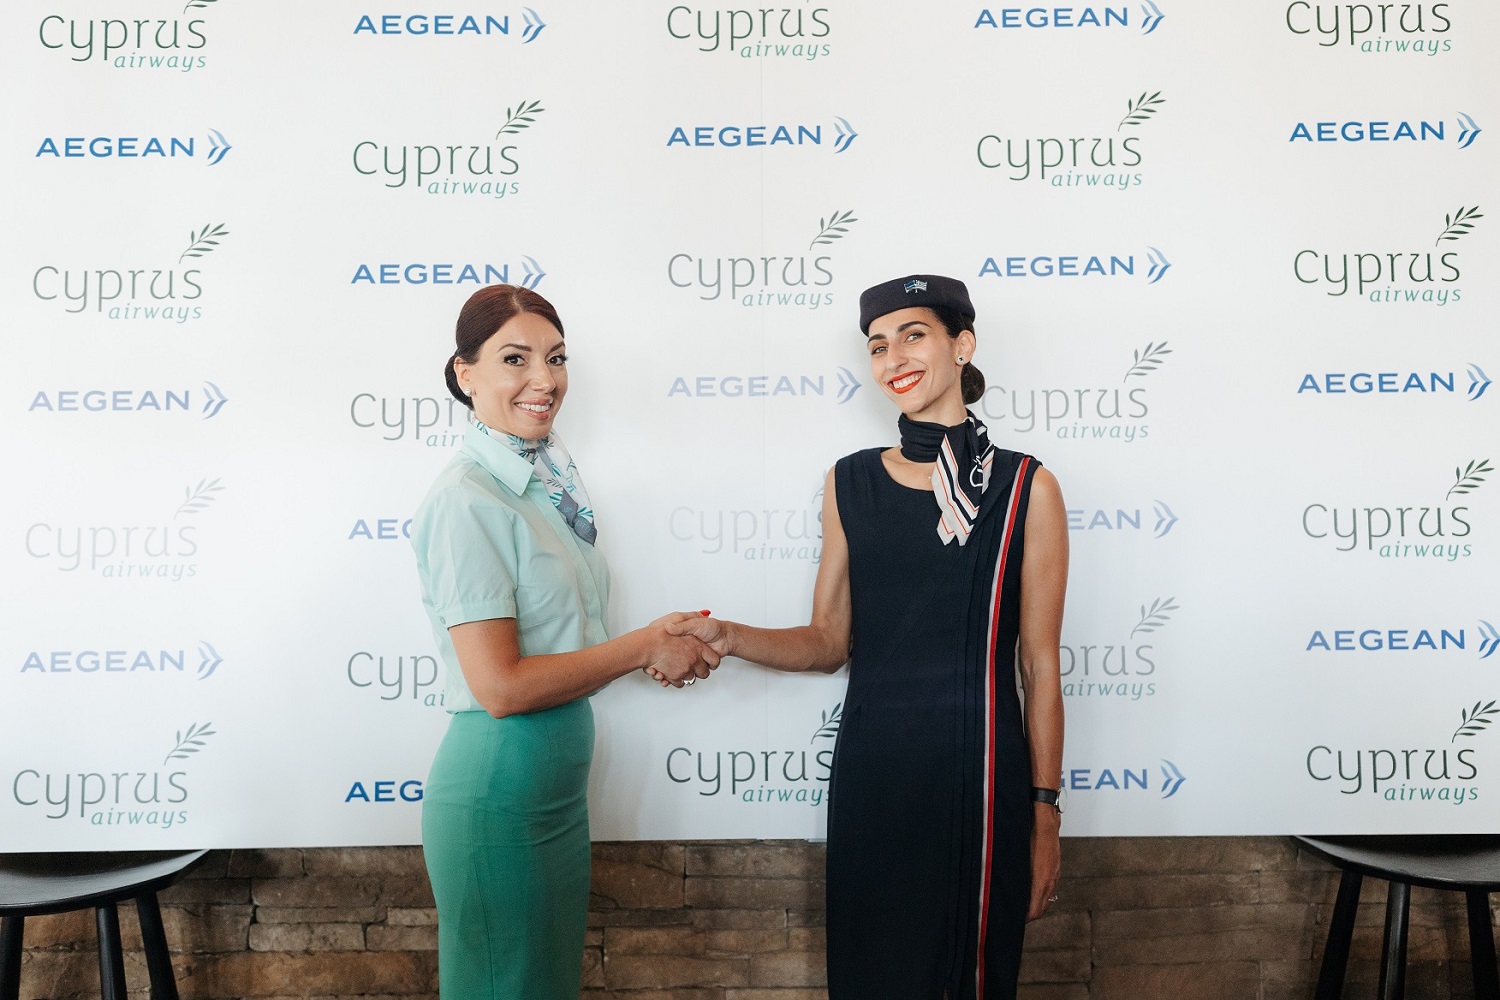 Aegean Cyprus Airways